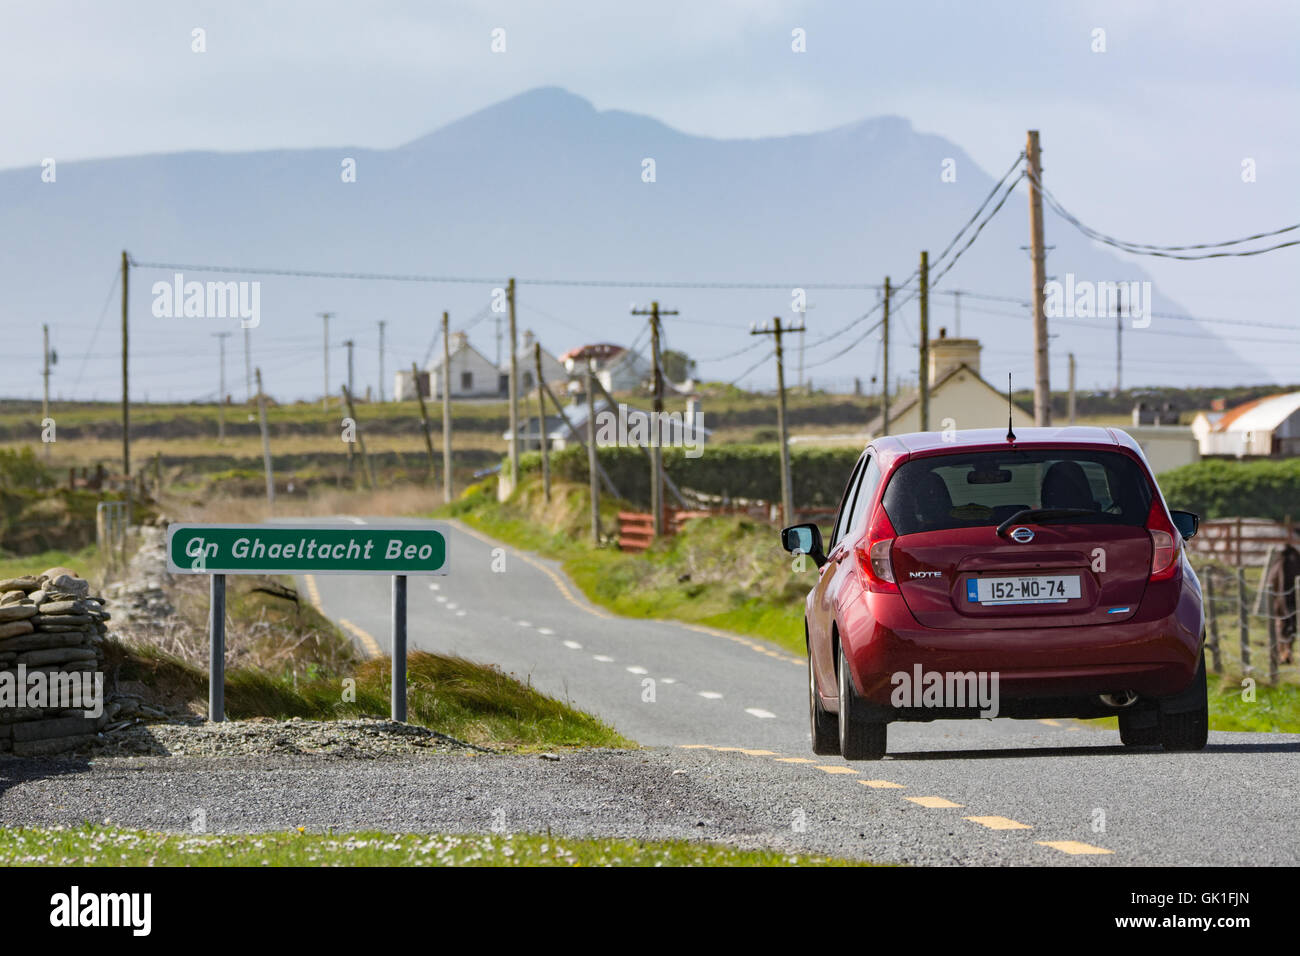 Voiture conduit au-delà d'un signe de vie Ghaeltacht Beo (région de langue irlandaise) près de Belmullet de Mayo sur la côte ouest de l'Irlande Banque D'Images